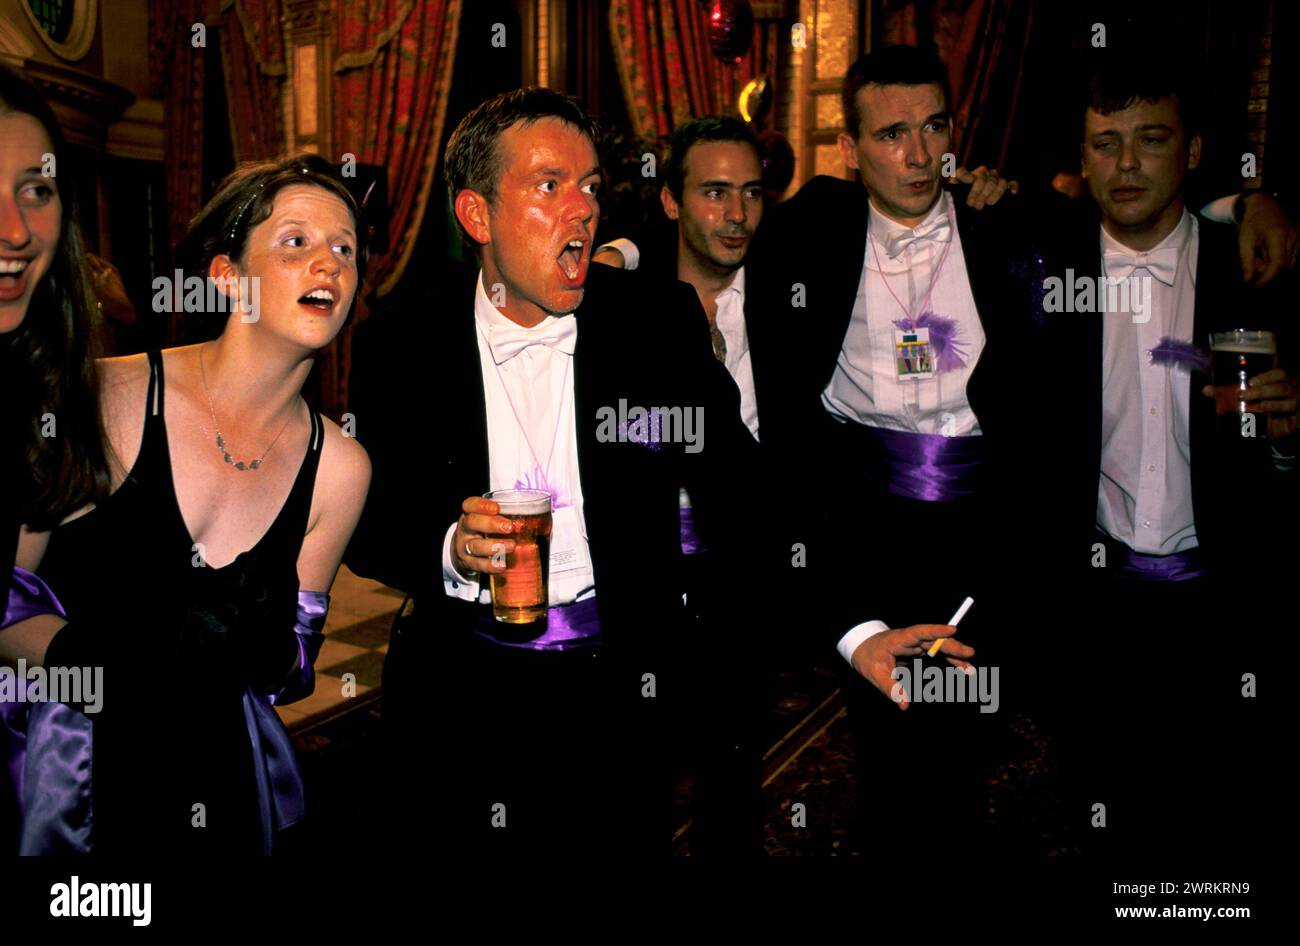 Gayfest Lavender Ball un groupe choral basé à Manchester se produit au concert Party. Manchester, Lancashire, Angleterre août 1999. ANNÉES 1990 ROYAUME-UNI HOMER SYKES Banque D'Images